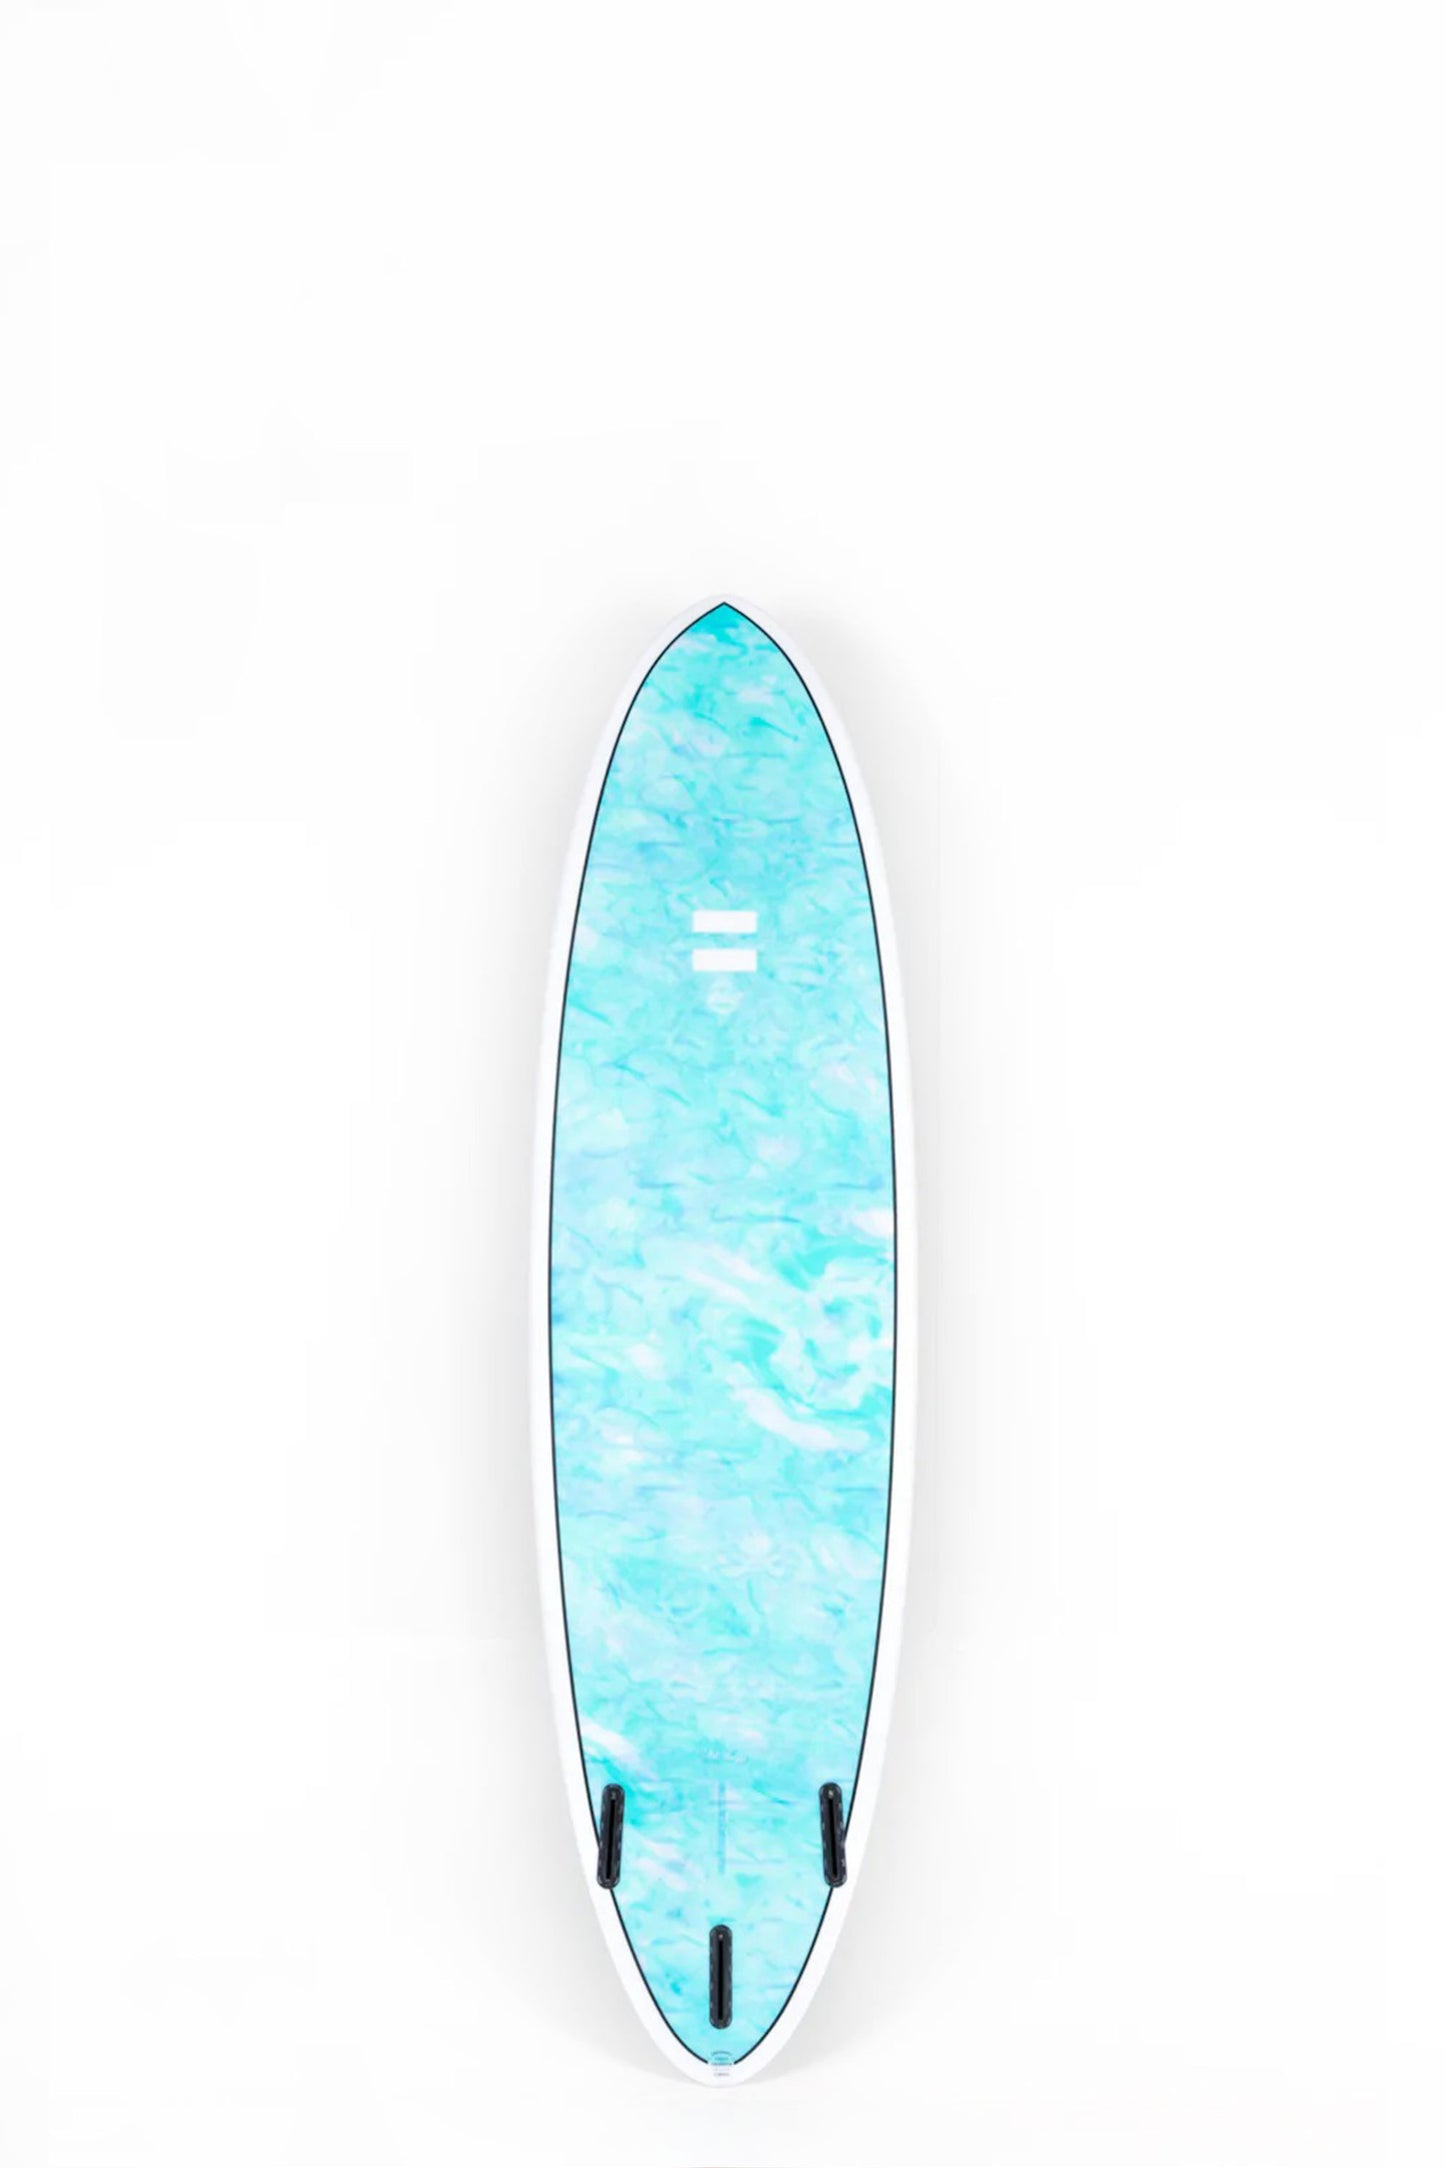 Pukas Surf Shop - Indio Endurance - THE EGG Swirl Effect Blue Mint - 6´8 x 21 1/2 x 2 3/4 - 46L